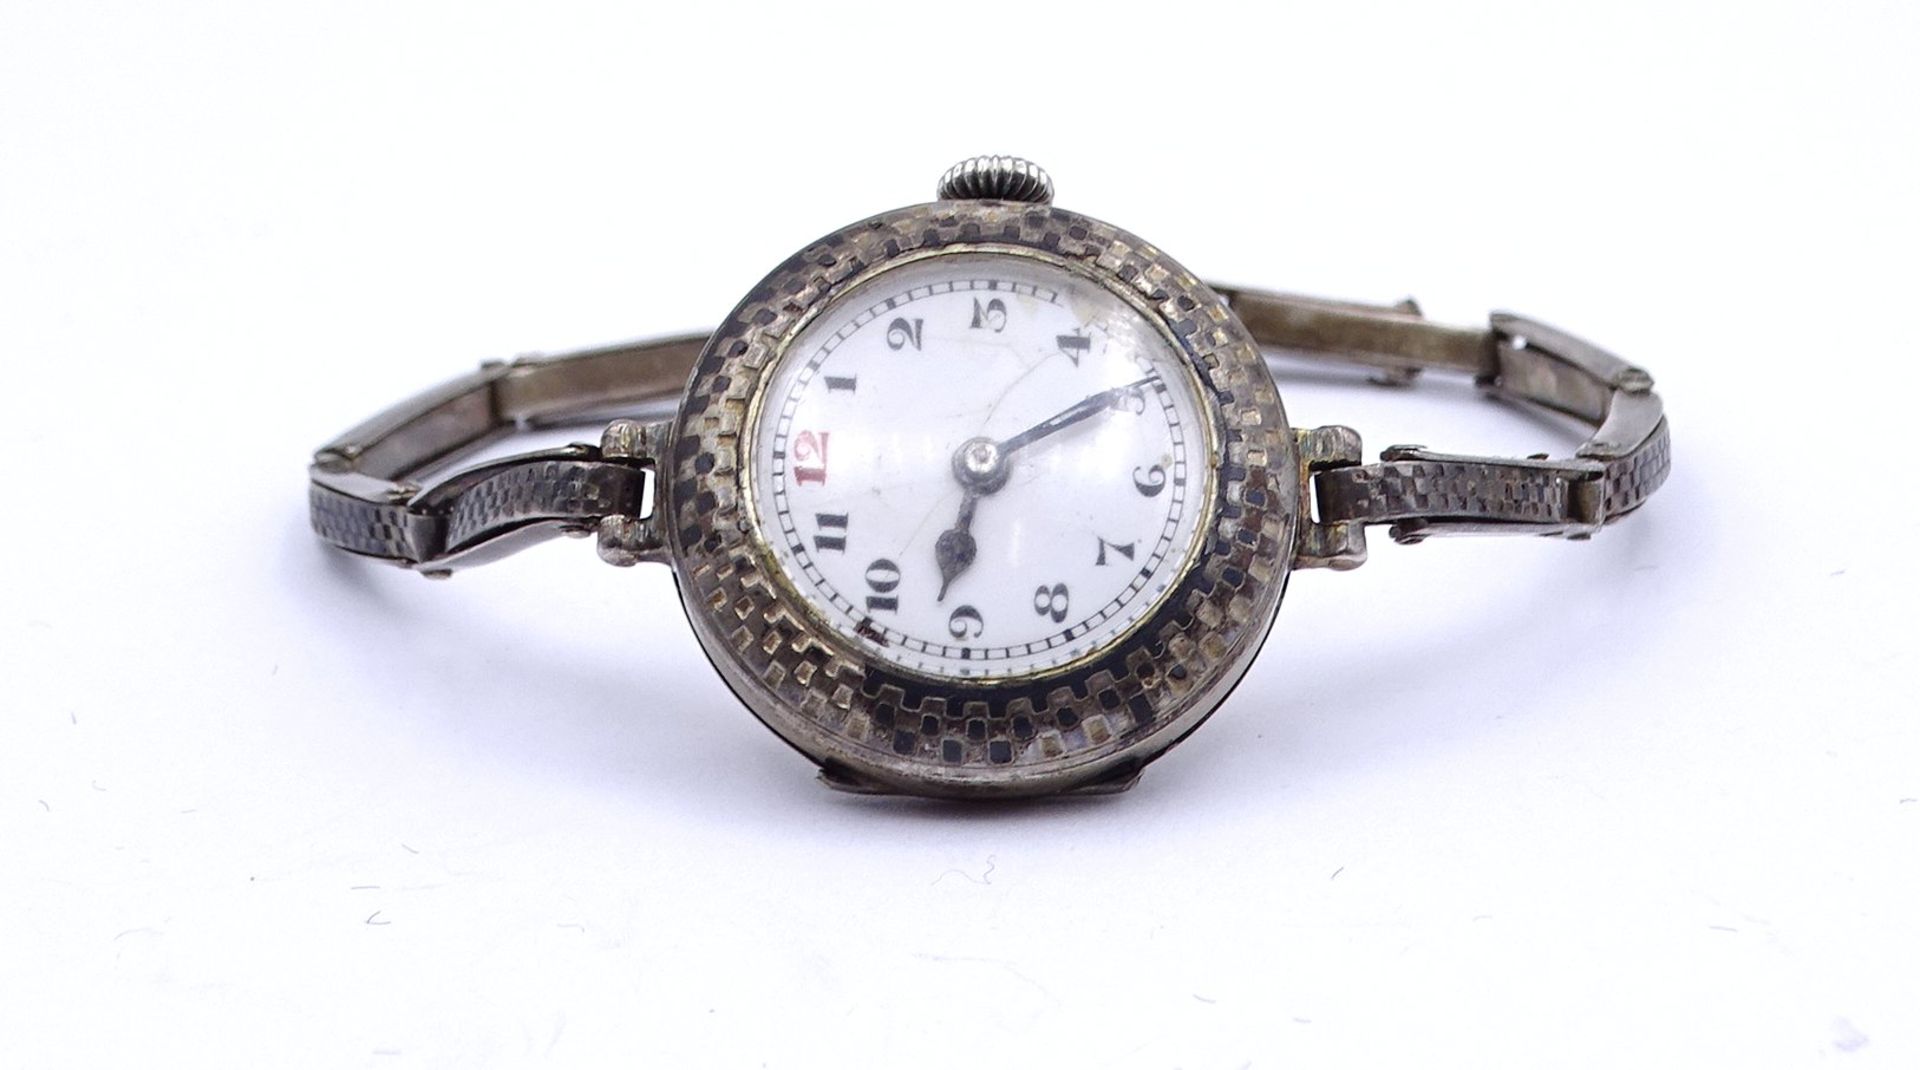 Damen Armbanduhr, Silber 0.800, mechanisch, Werk läuft, D. 26mm, Zifferblatt beschädigt, Verschluss